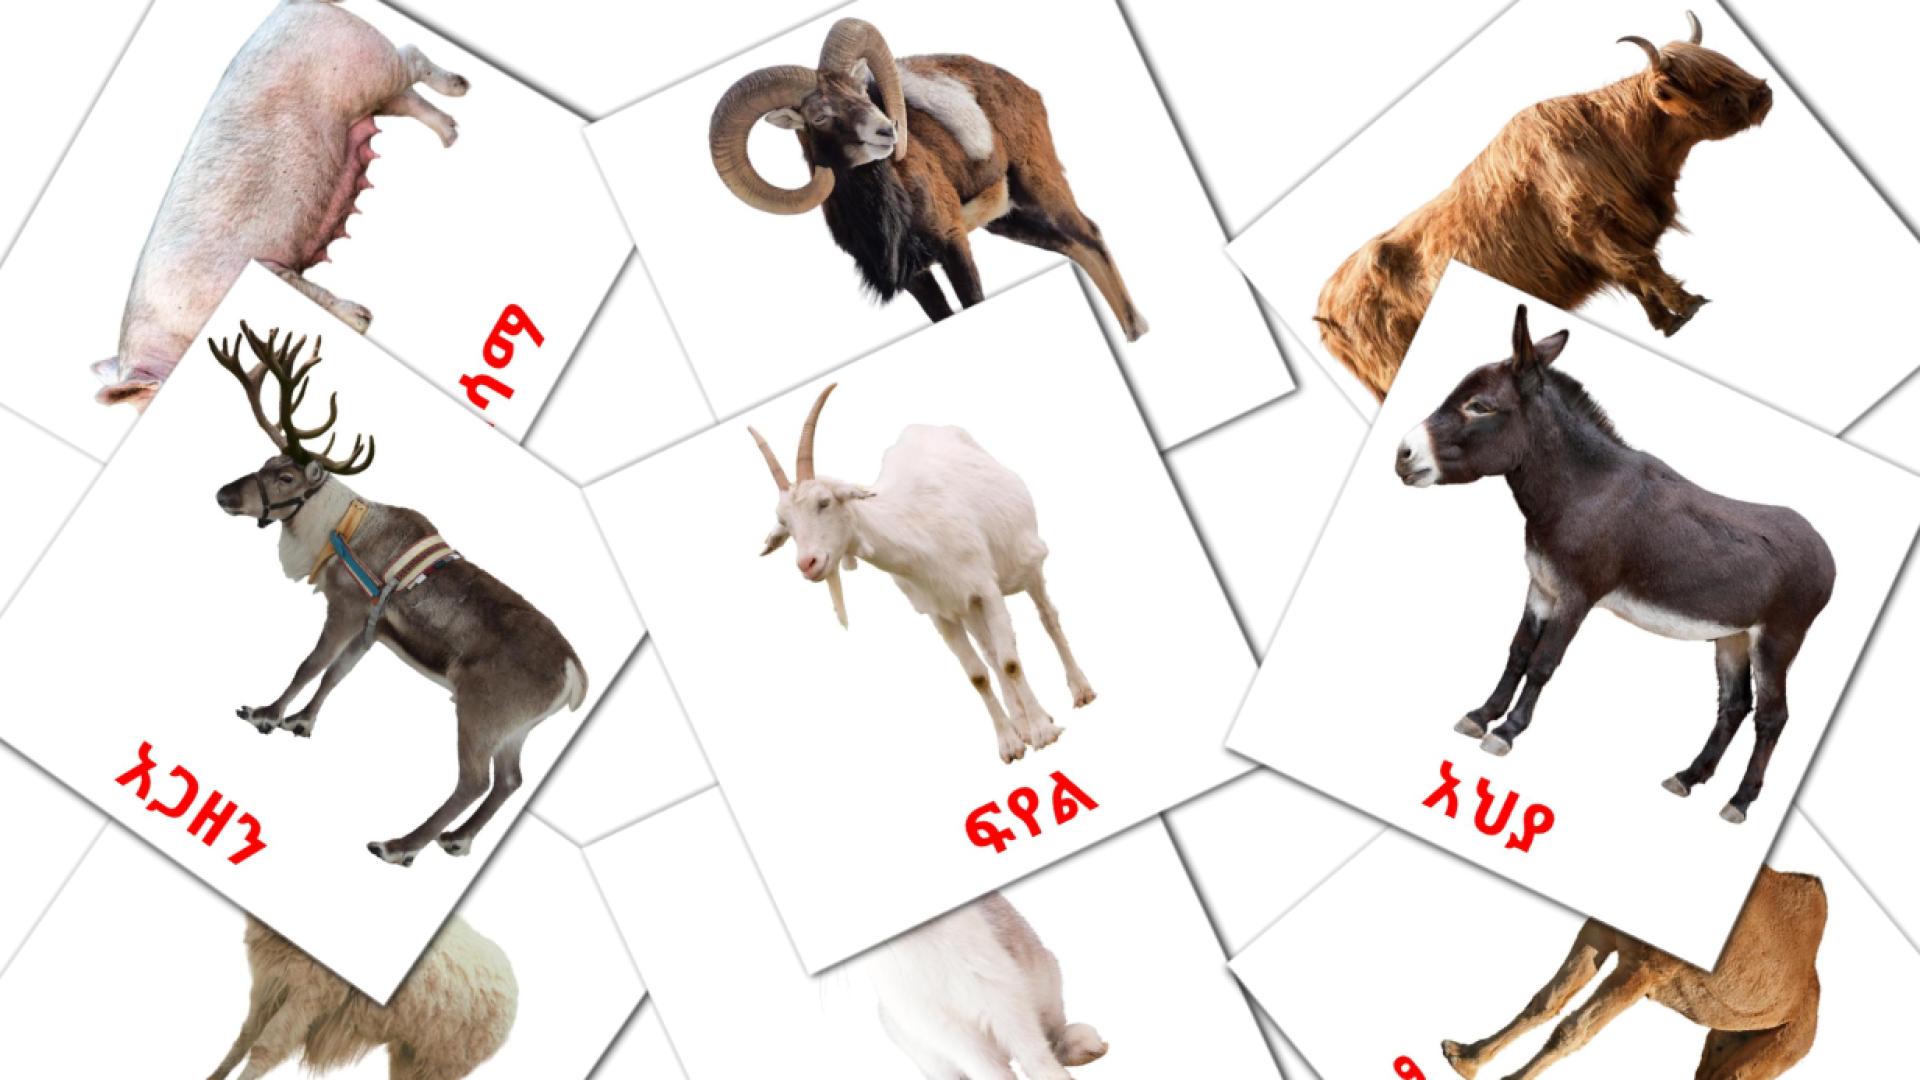 Farm animals - amharic vocabulary cards